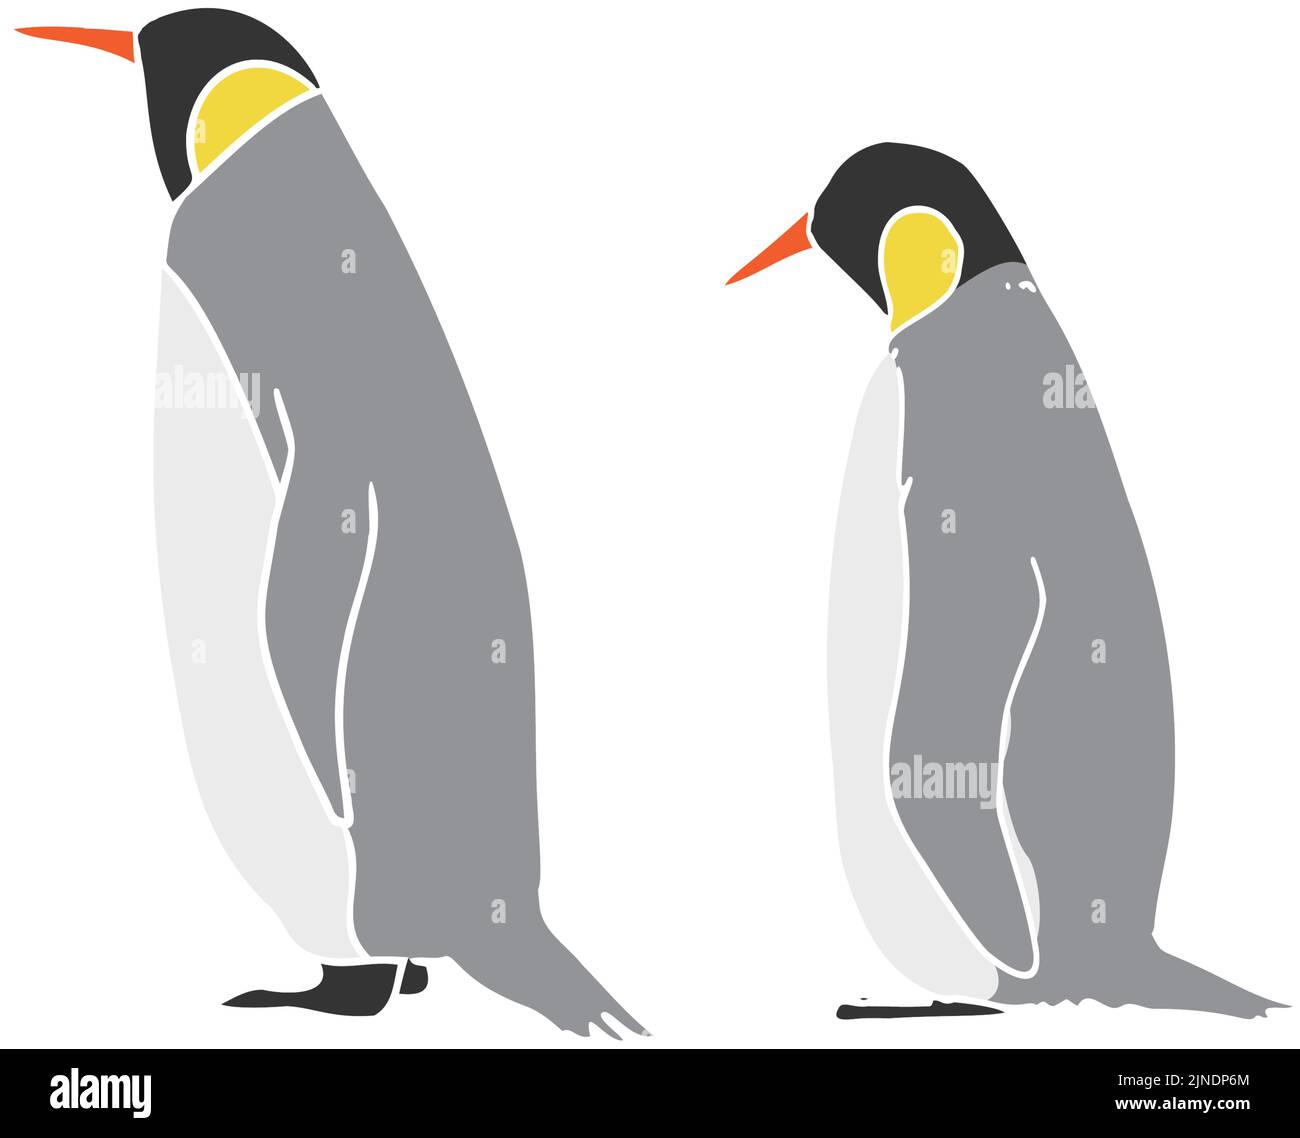 Illustration des pingouins de l'empereur, la ligne principale est blanche Illustration de Vecteur